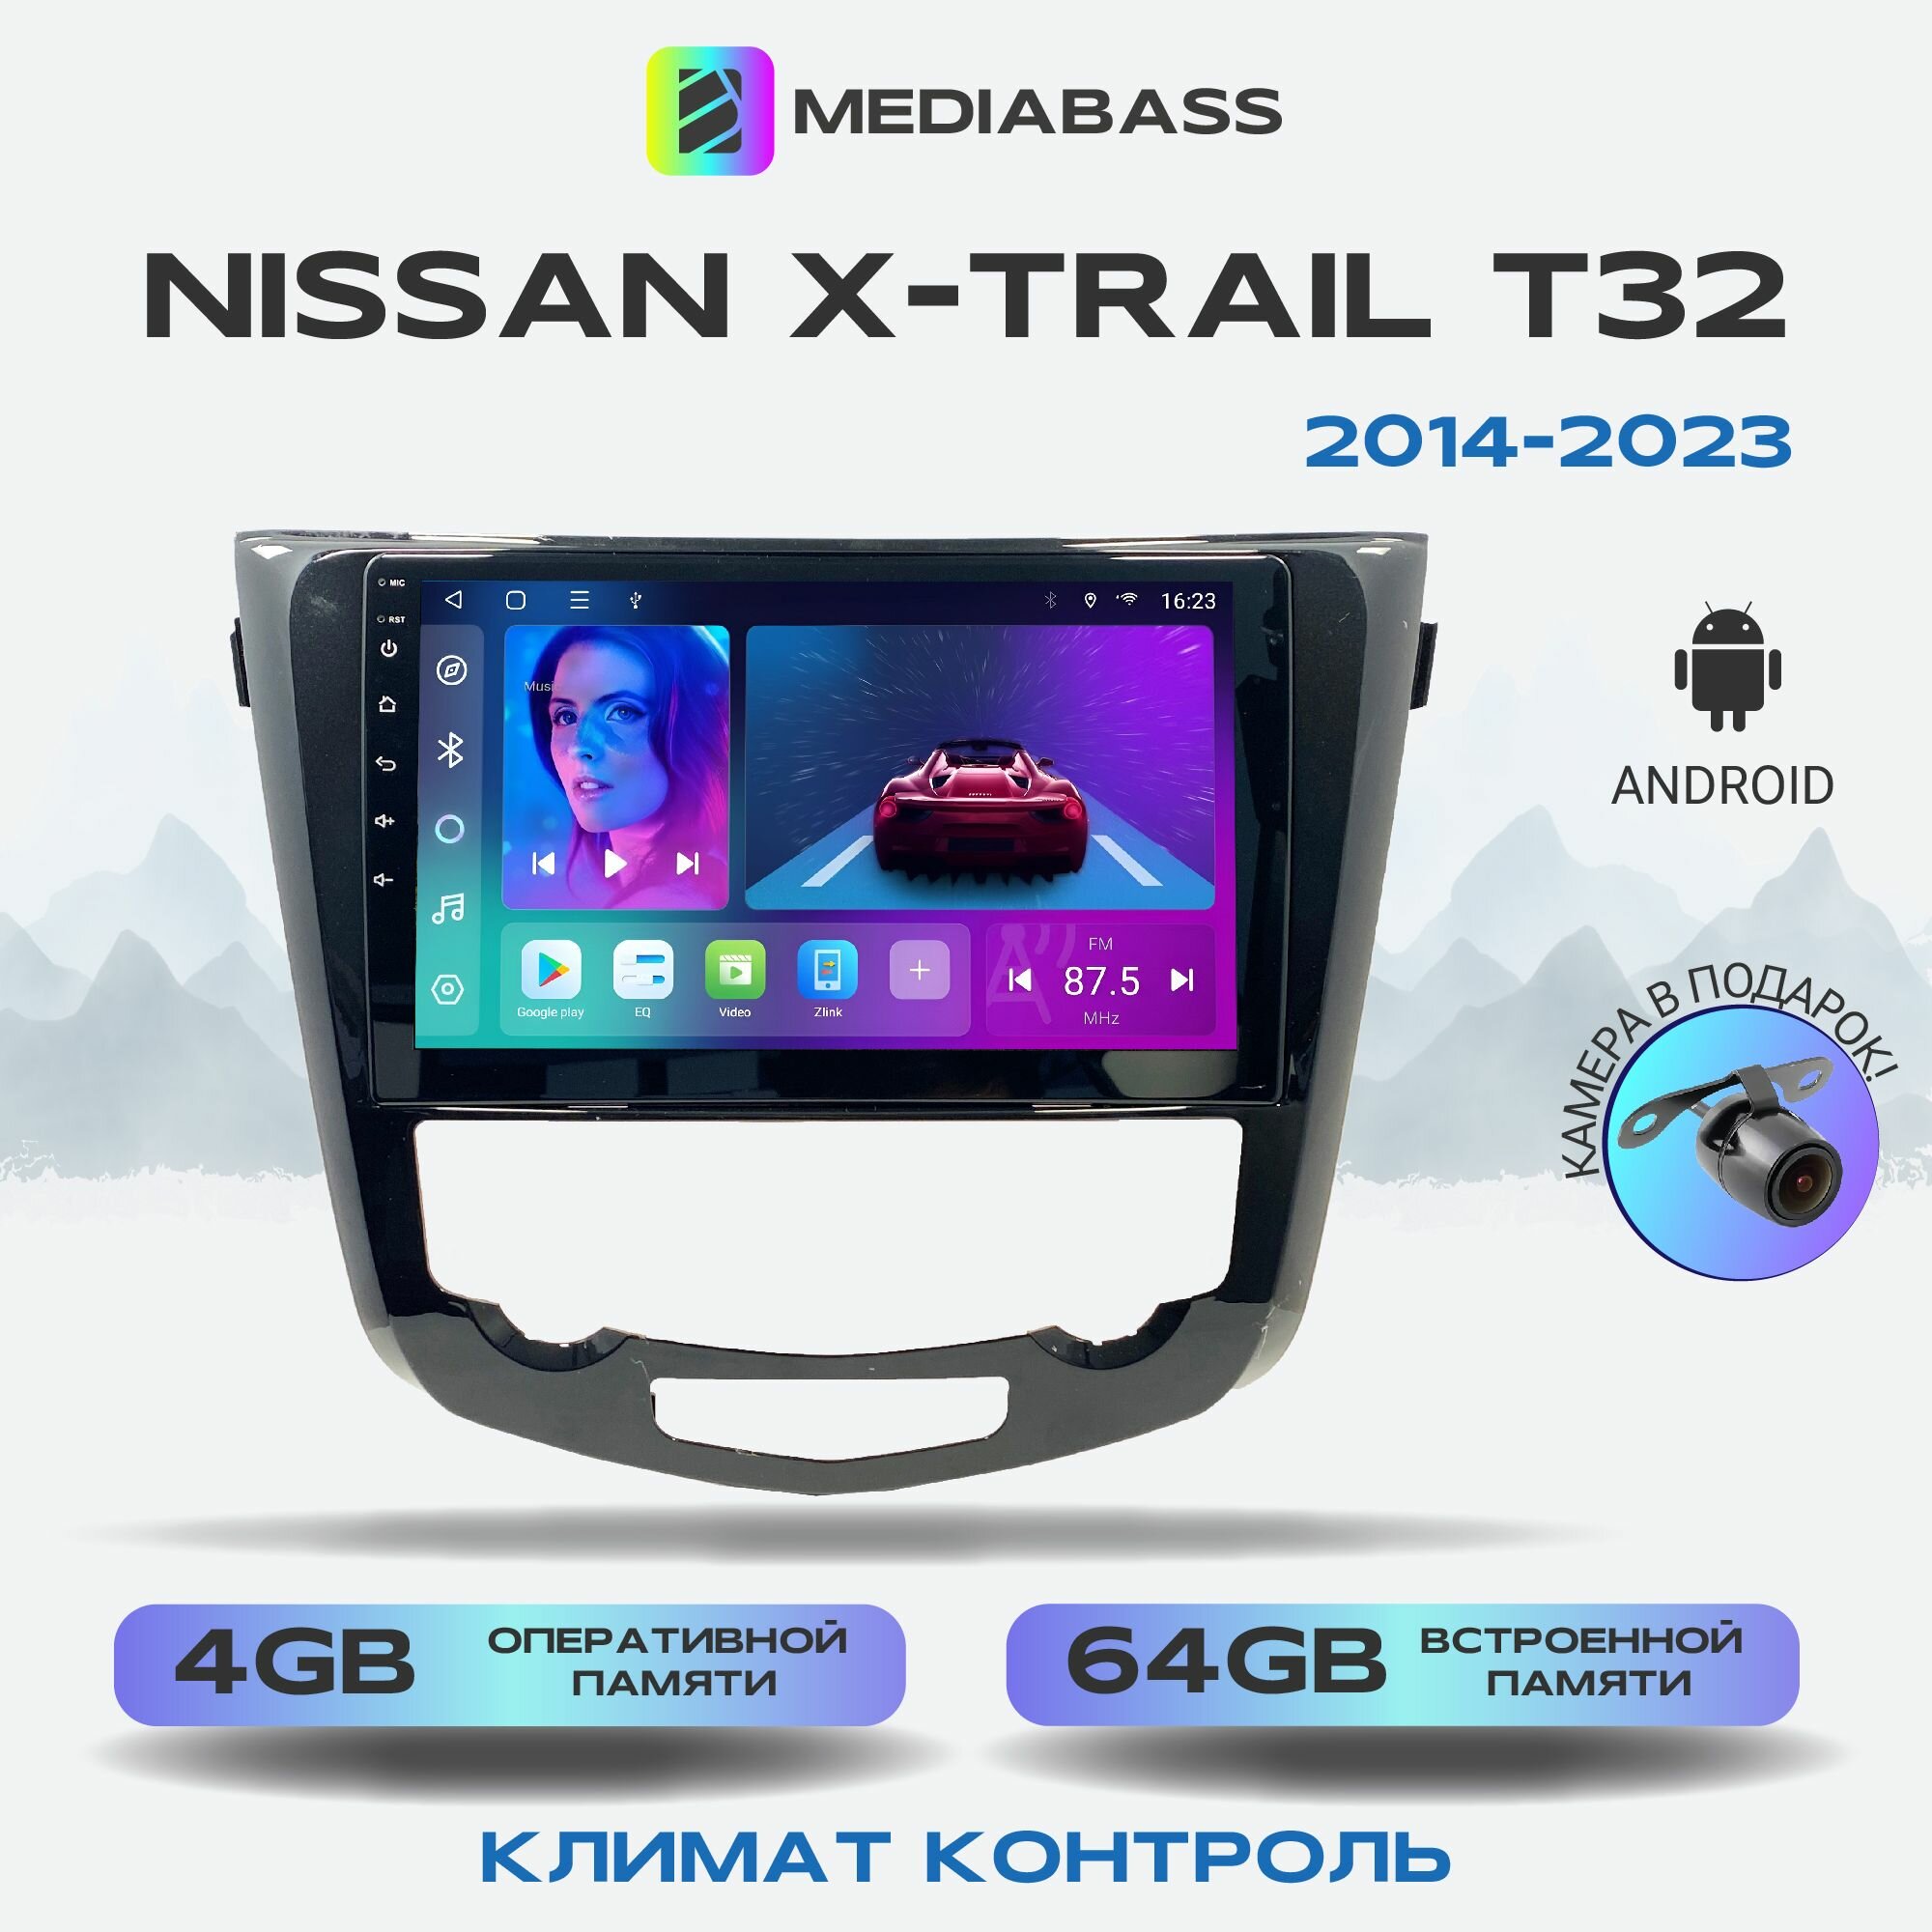 Магнитола MEDIABASS Nissan X-Trail T32 2014-2023 Климат контроль, Android 12, 4/64GB, 8-ядерный процессор, DSP, 4G модем, чип-усилитель TDA7851 / Ниссан Х Трейл